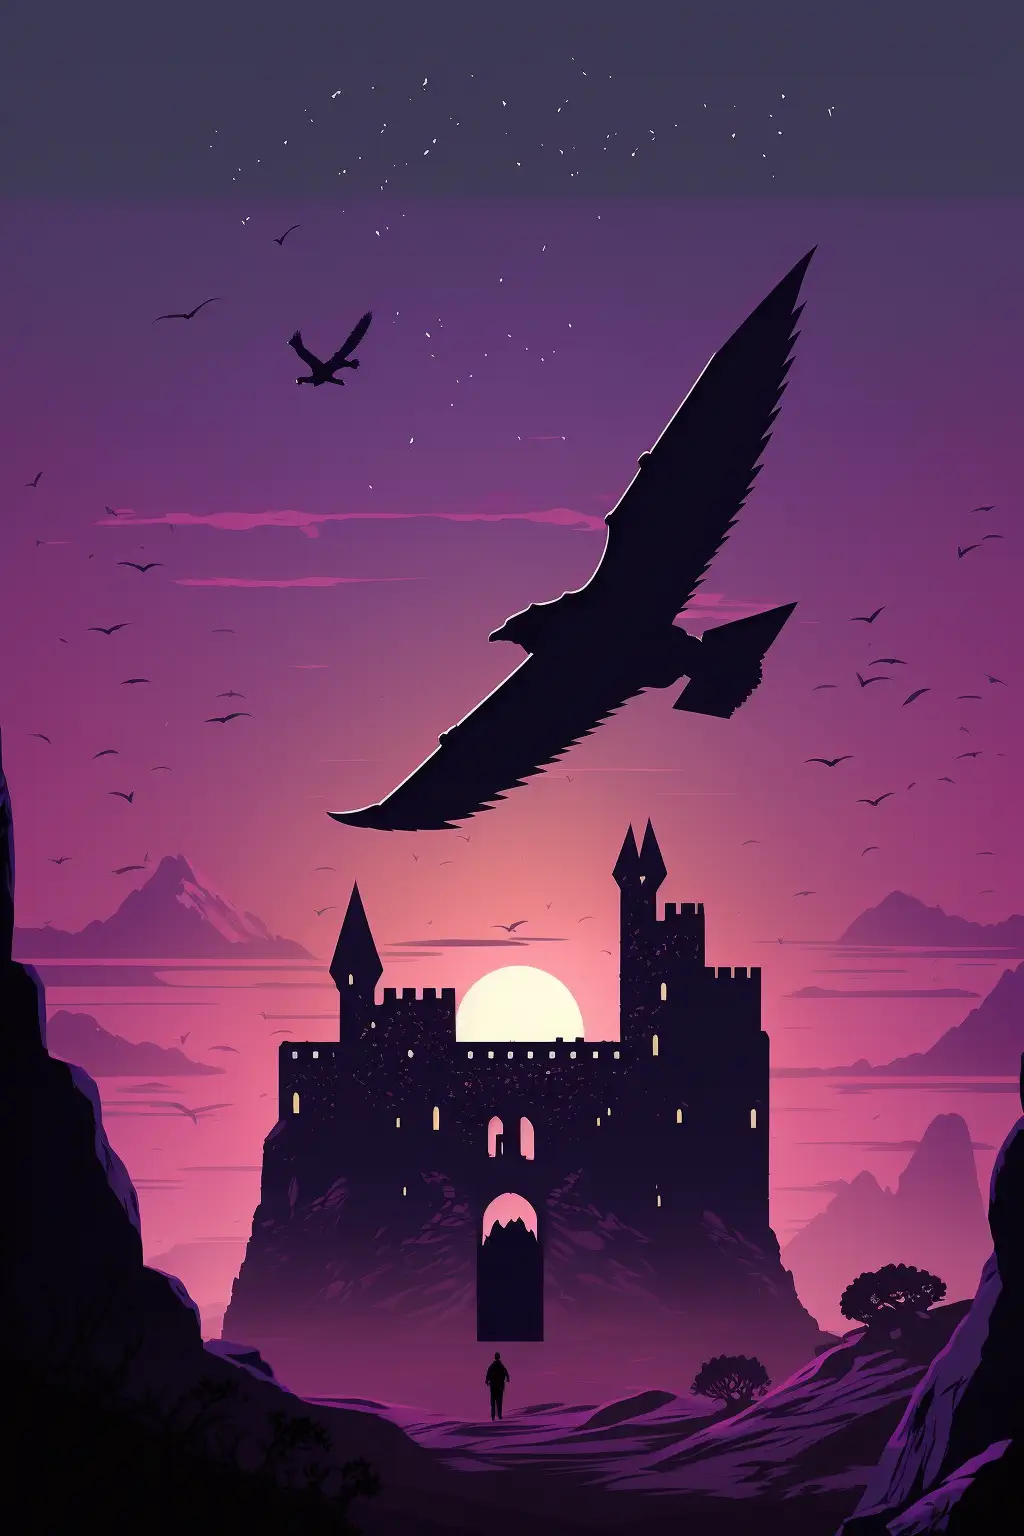 Drakosha_medieval_castle_in_the_background_purple_and_dark_fant_324841c9-4177-47d2-9c86-0e028f044850